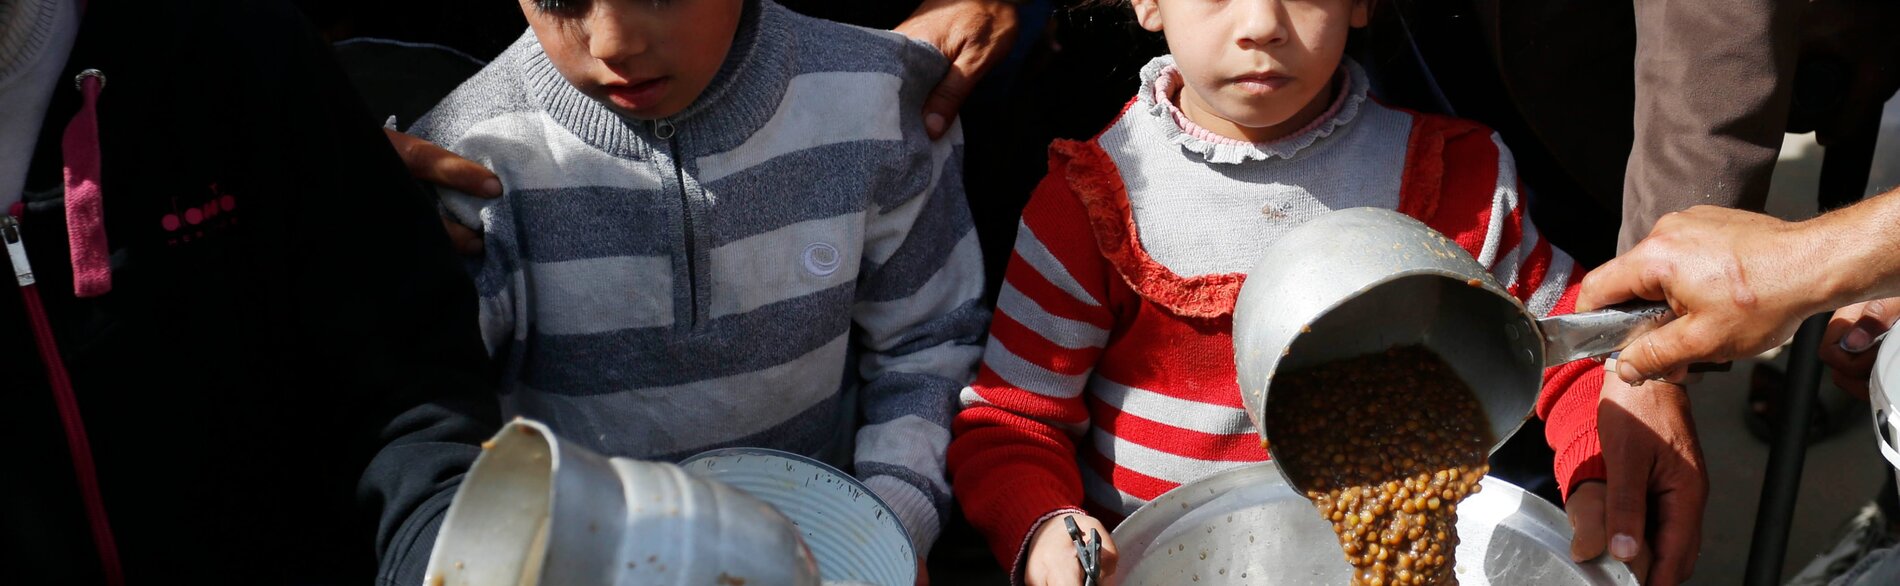 حذّر برنامج الأغذية العالمي من مجاعة وشيكة، حيث قدم 88 طنًا متريًا من الطرود الغذائية ودقيق القمح لـ25,000 شخص في شمال غزة خلال هذا الأسبوع. تصوير الأونروا